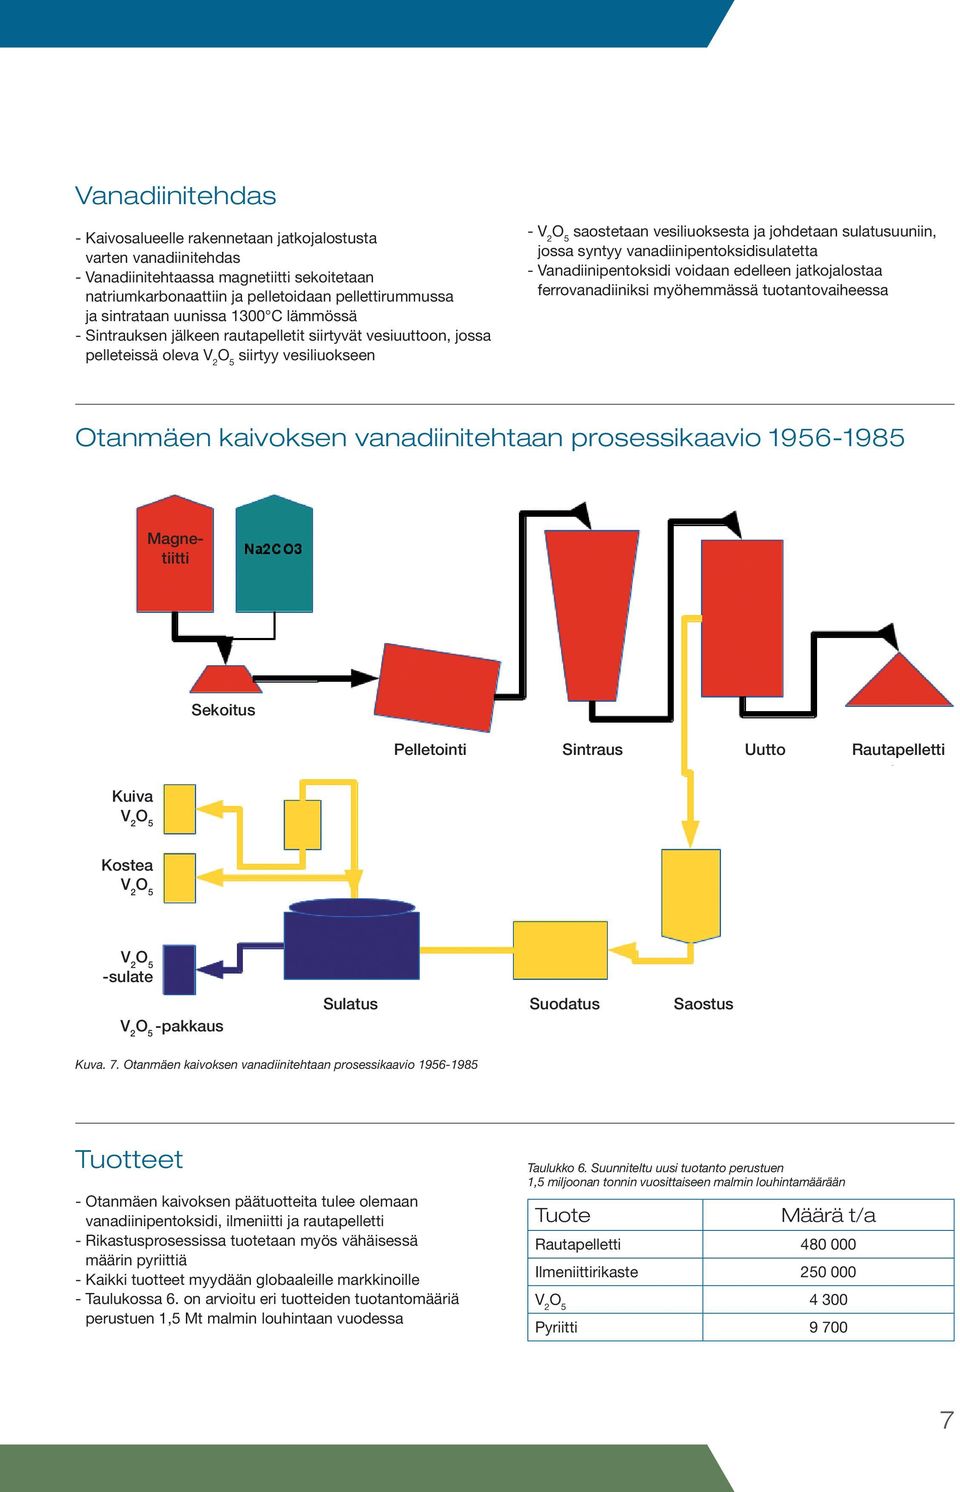 vanadiinipentoksidisulatetta - Vanadiinipentoksidi voidaan edelleen jatkojalostaa ferrovanadiiniksi myöhemmässä tuotantovaiheessa Otanmäen kaivoksen vanadiinitehtaan prosessikaavio 1956-1985